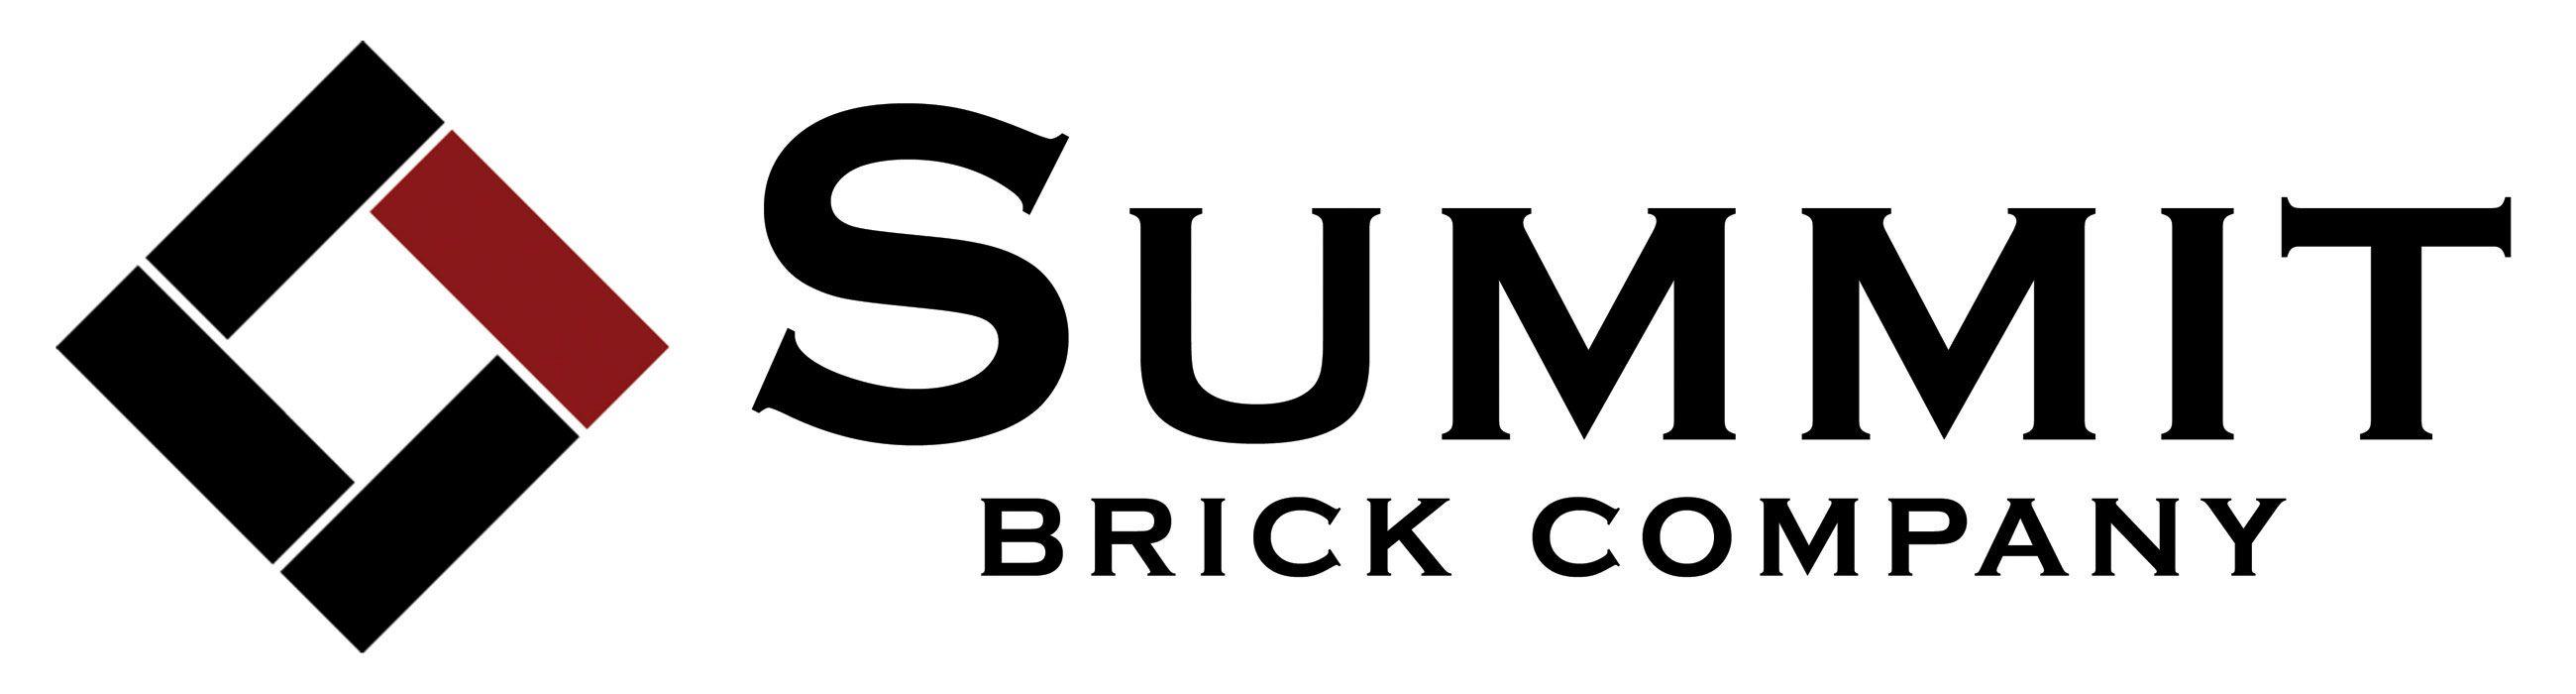 Brick Company Logo - Summit Brick Company Logo - Lusco Brick & Stone Co.